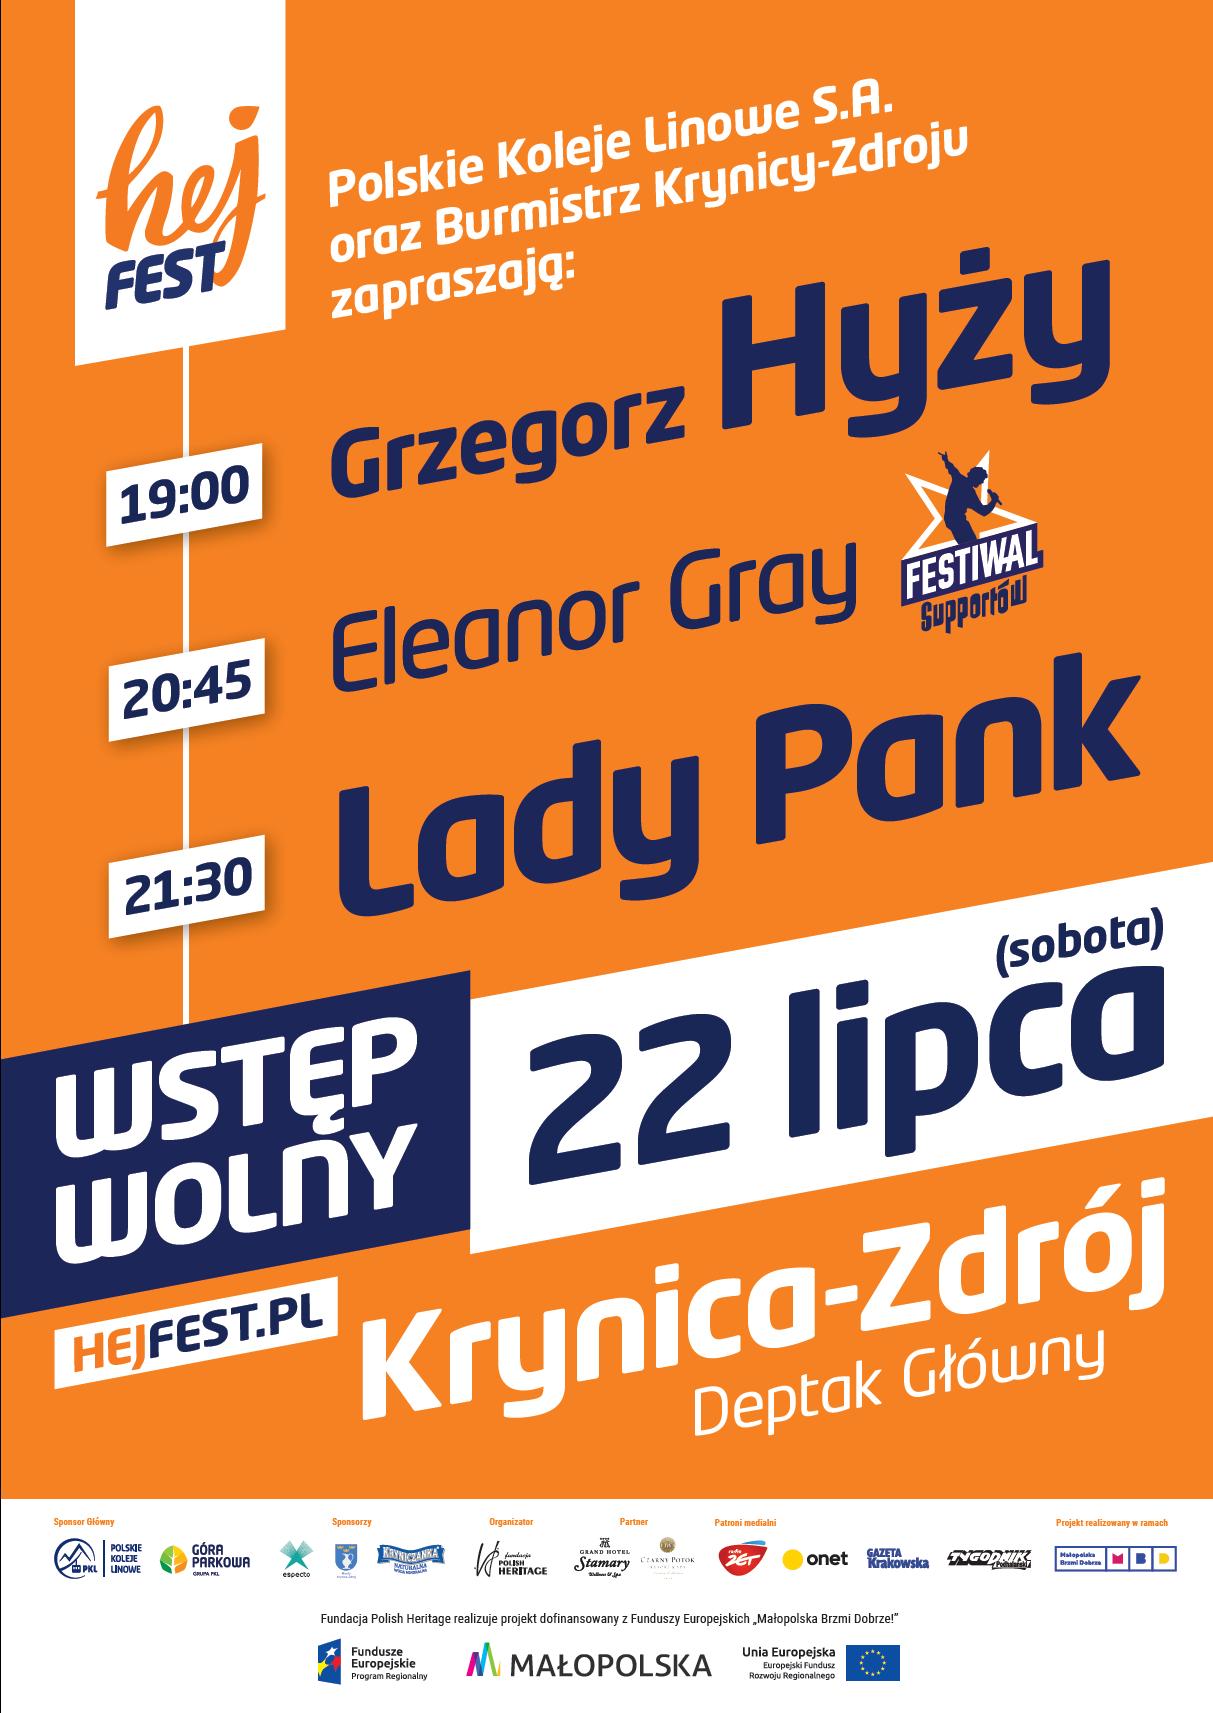 Hej Fest - Grzegorz Hyży, Eleanor Gray, Lady Pank